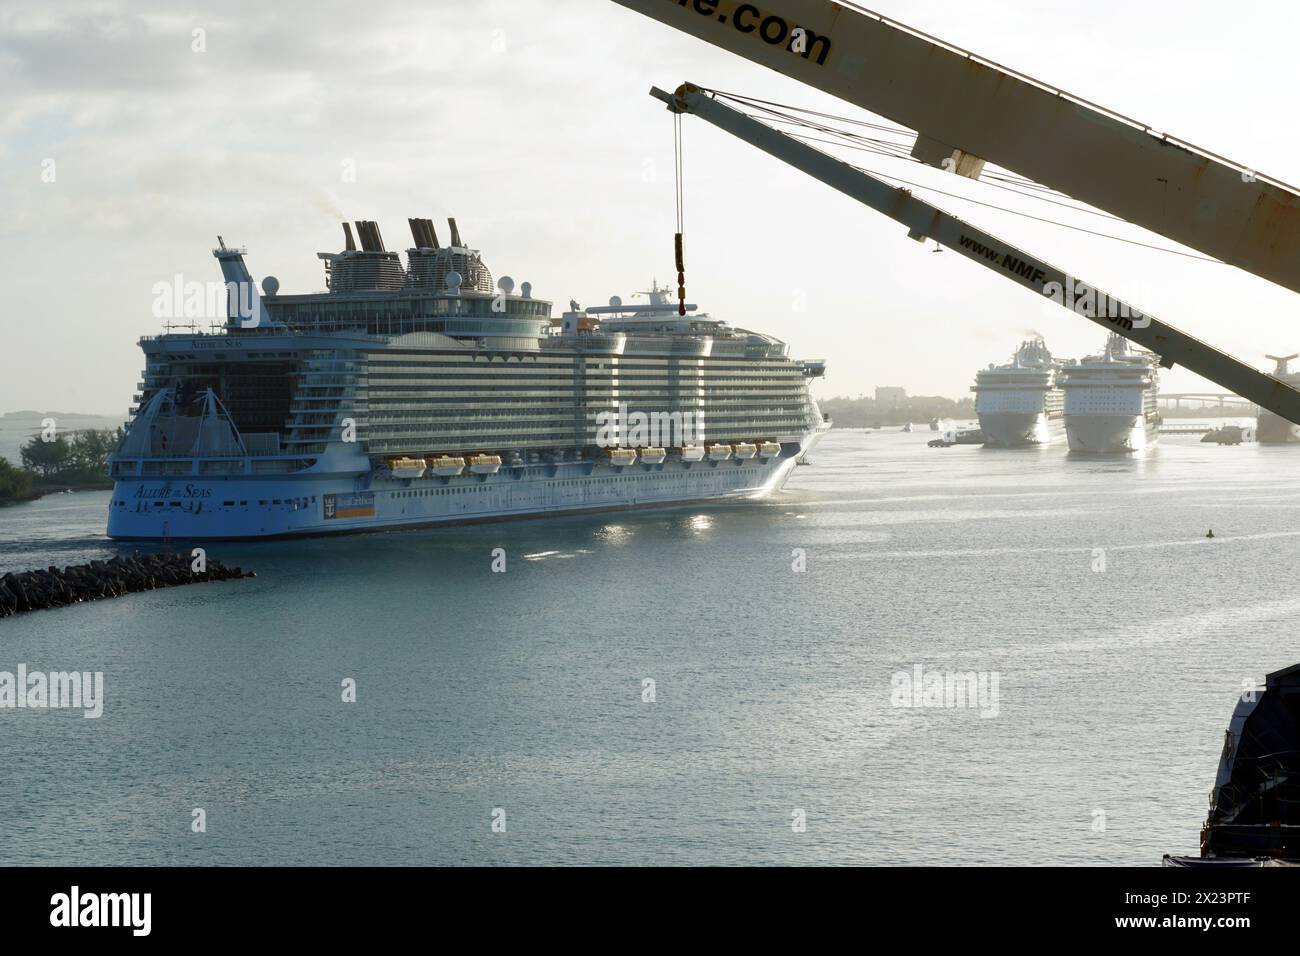 Das Passagierkreuzschiff Allure of the Seas nähert sich dem Hafen Nassau auf den Bahamas, einer der Karibikinseln. Stockfoto